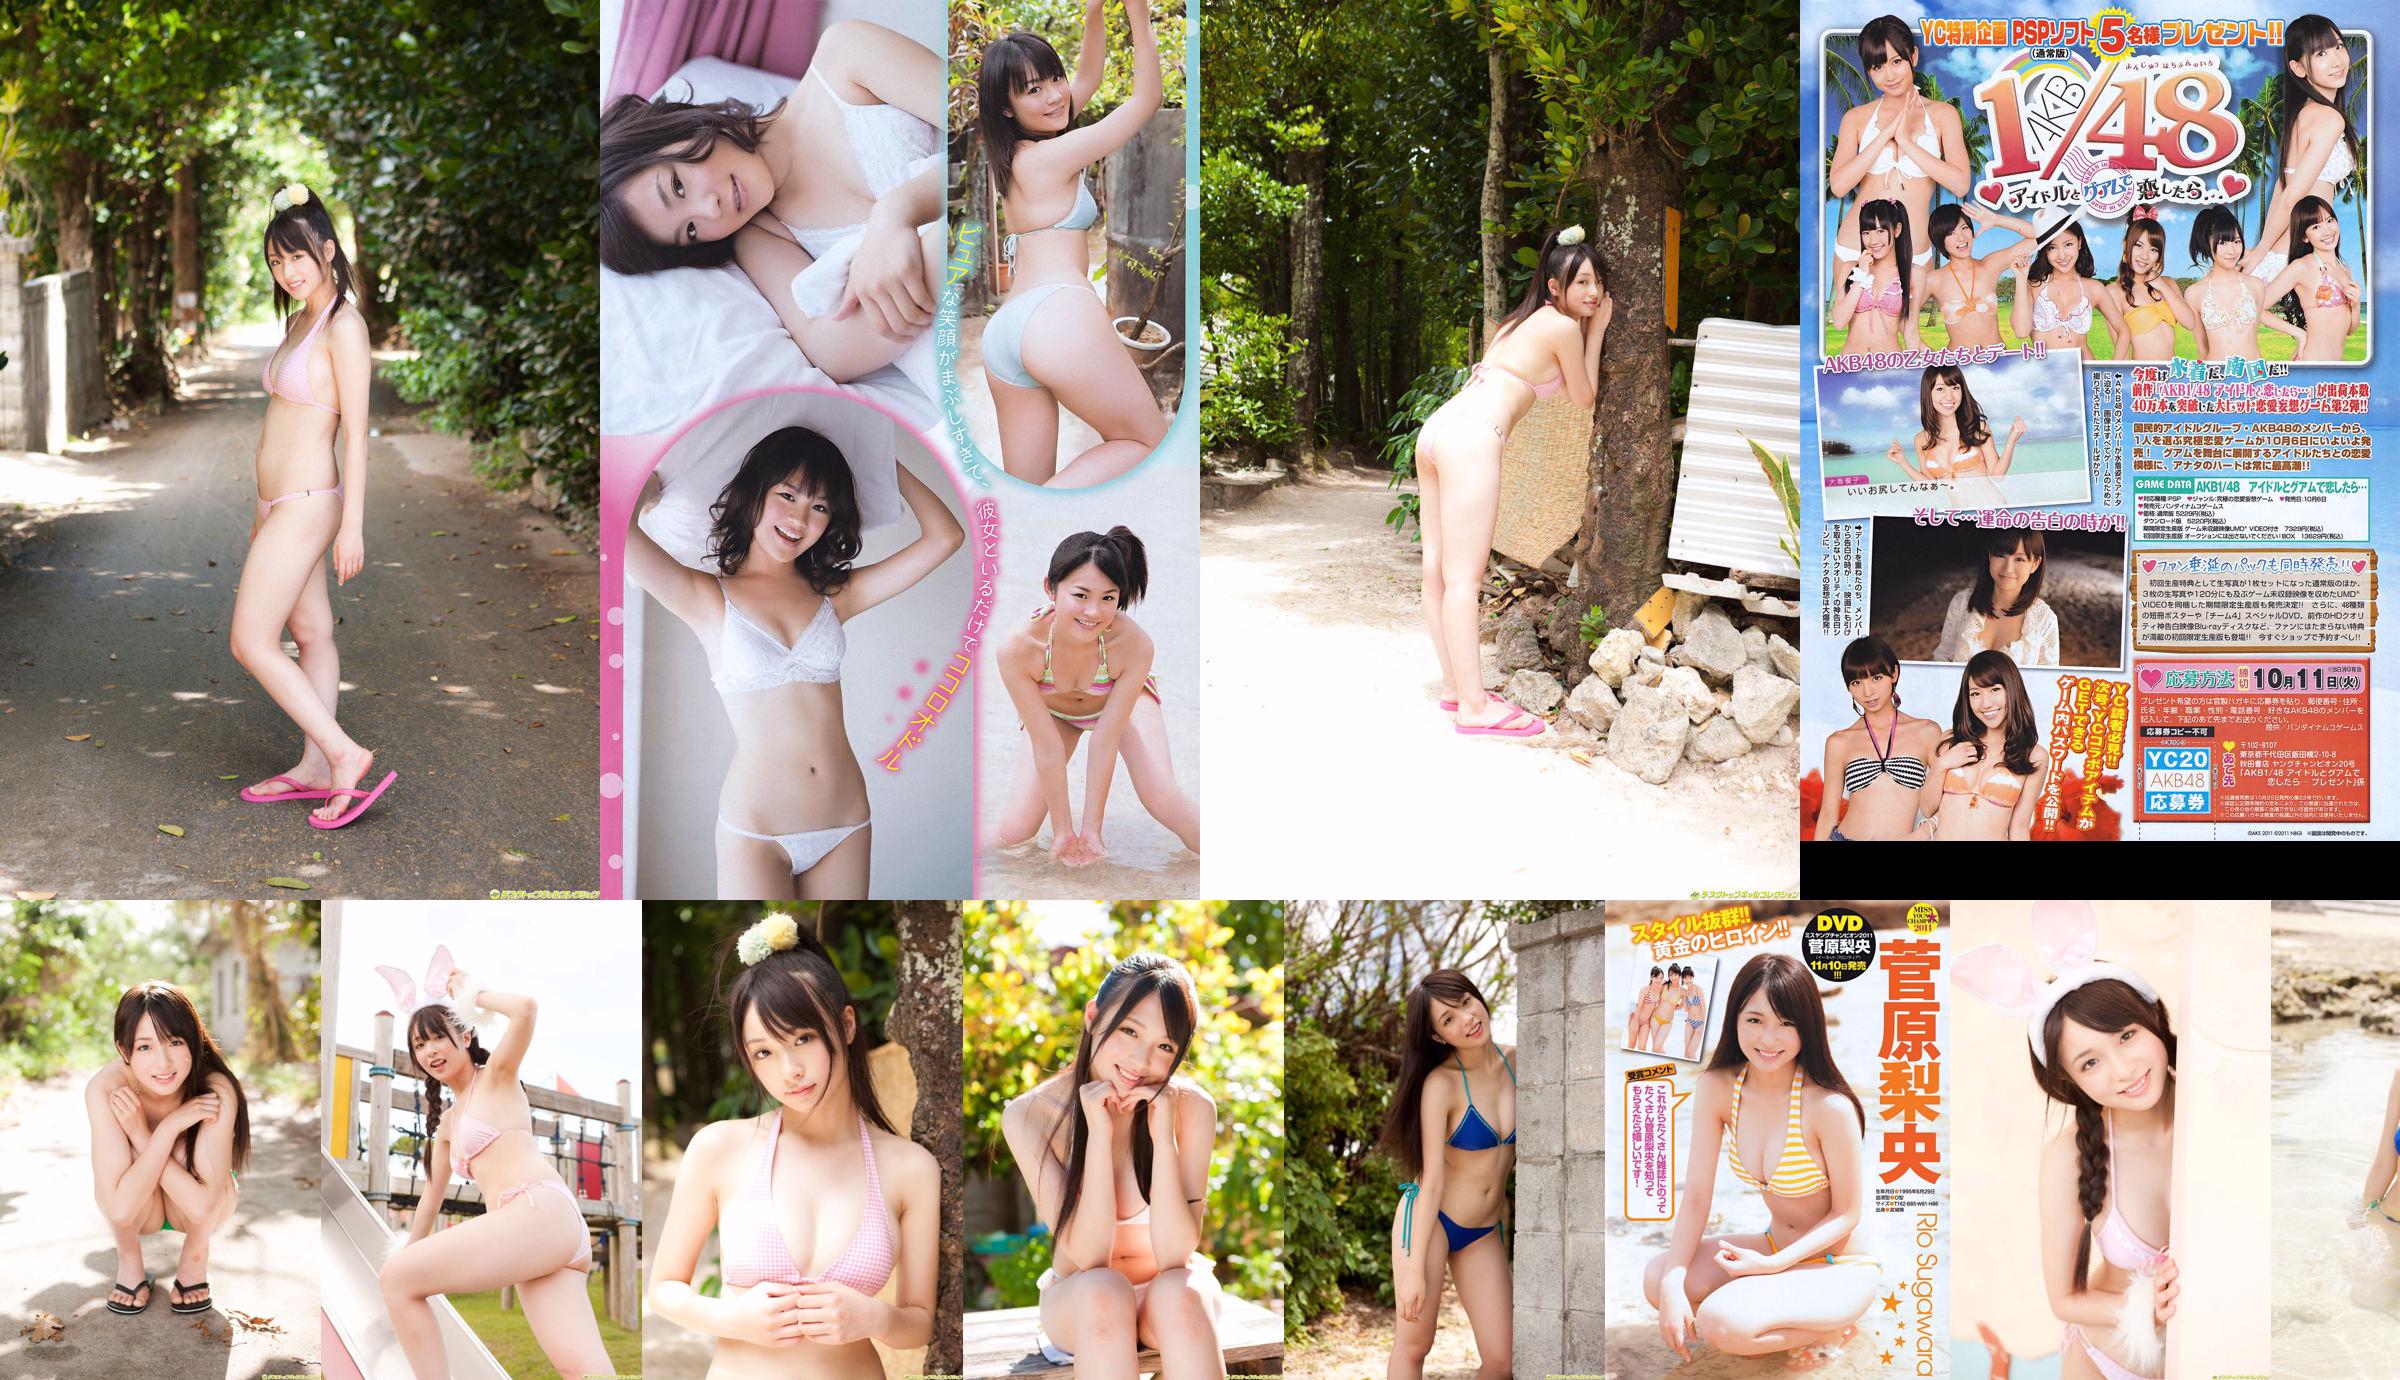 [Young Champion] Sugawara Risa, Horikawa Mikako, Matsushima no หรือ 2011 No. 20 Photo Magazine No.ee9016 หน้า 1